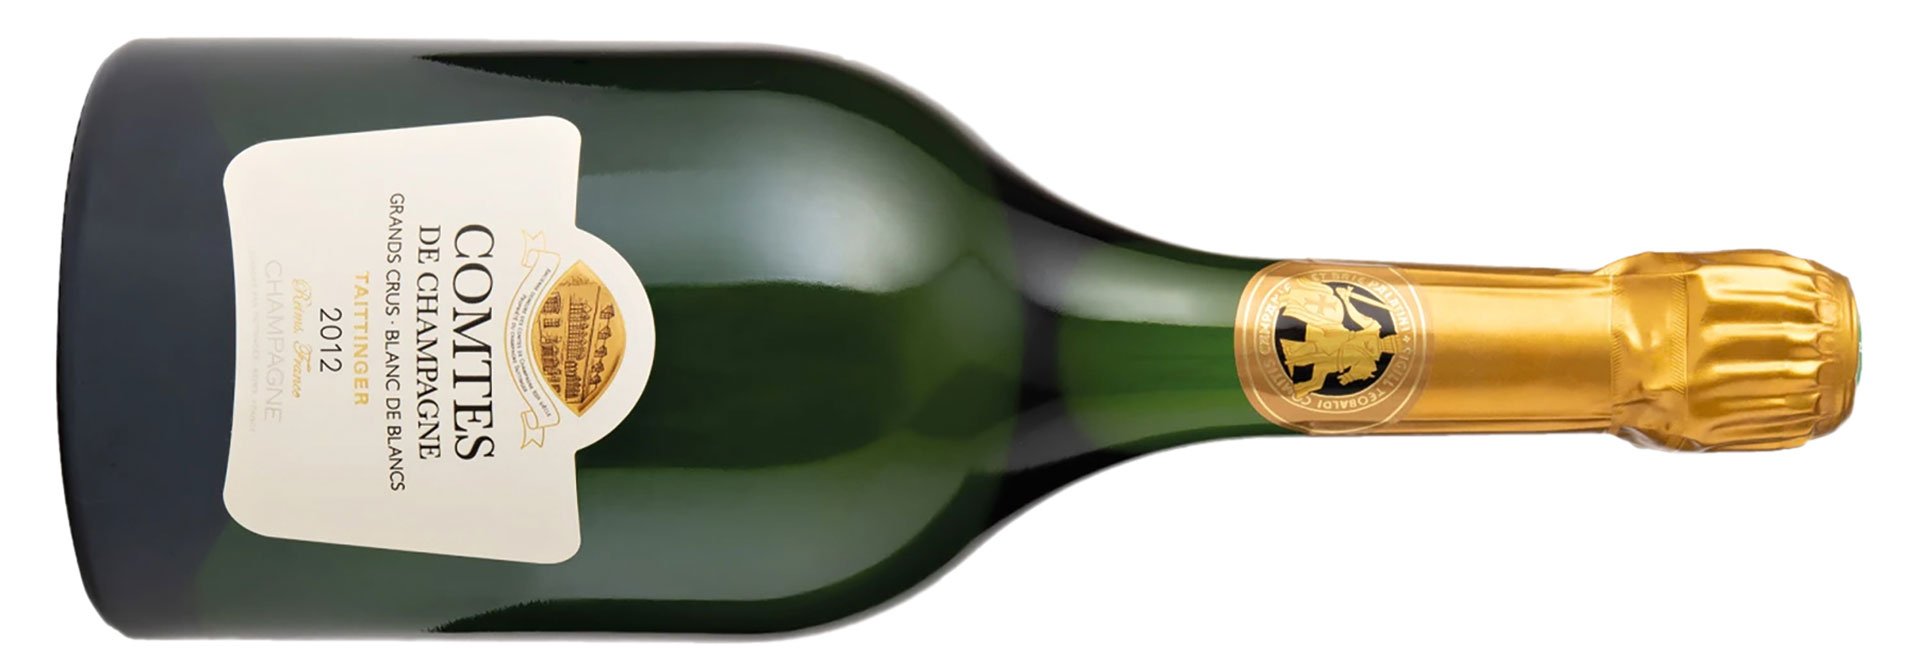 Dom Perignon, Altum Villare, 2012 - Bern's Fine Wines & Spirits